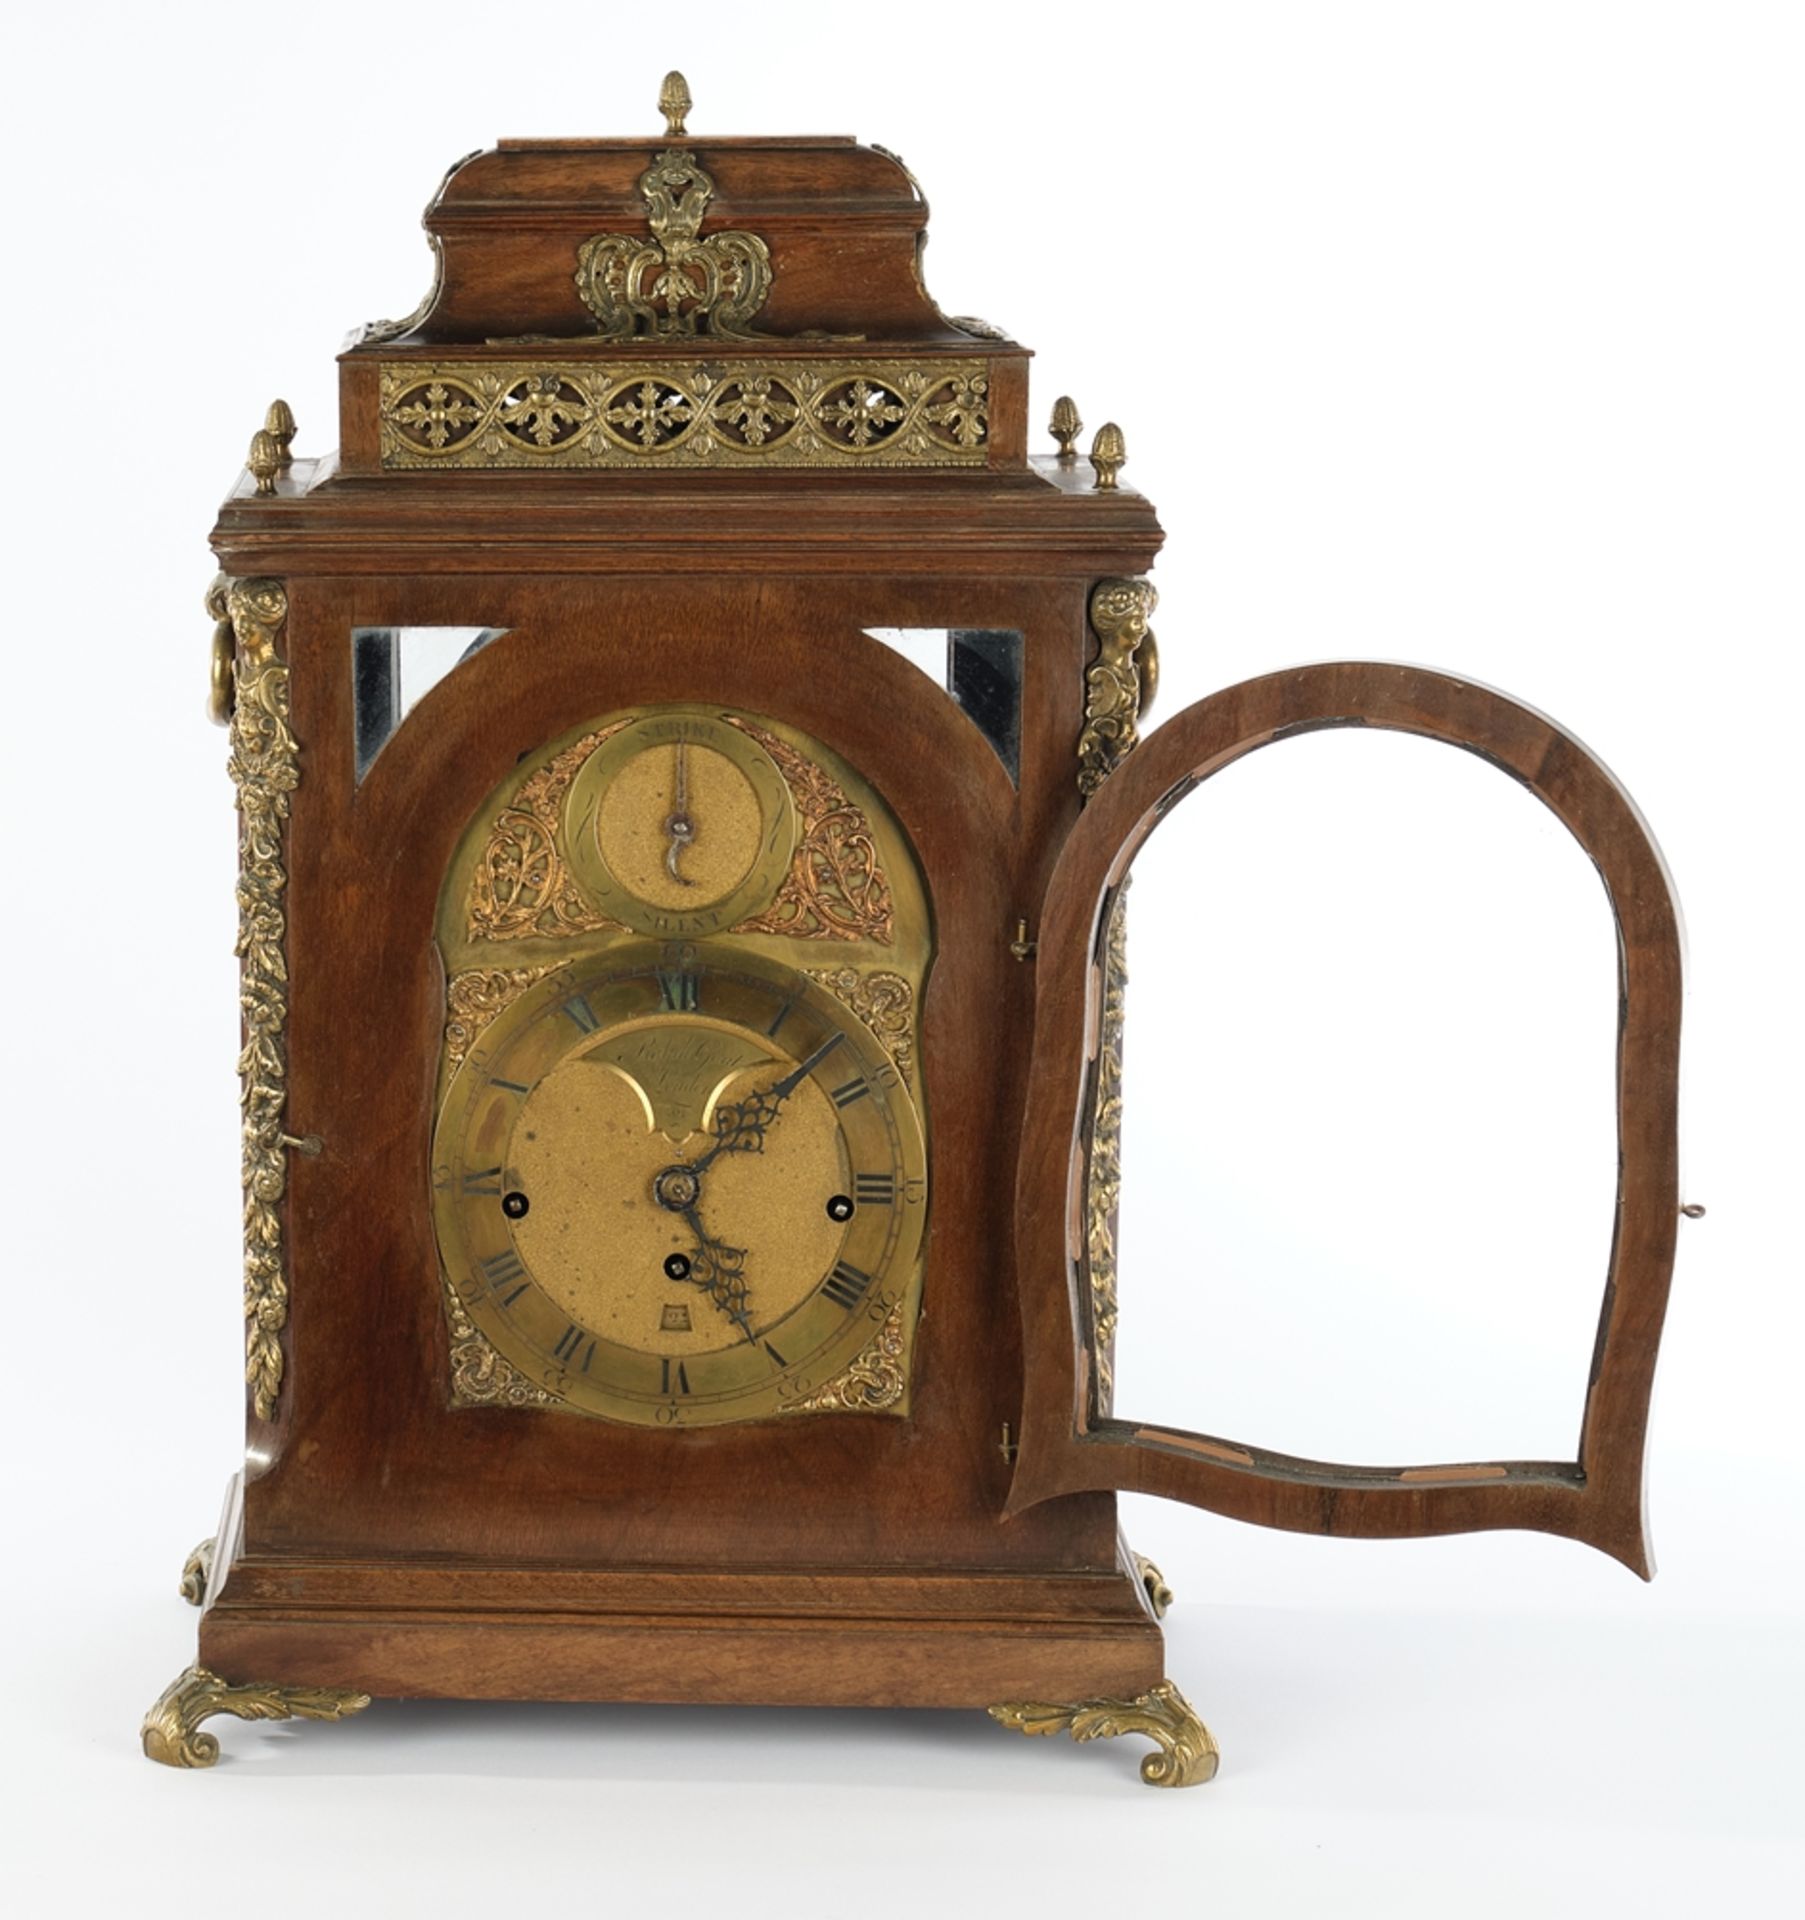 Bracket Clock, England, um 1830/40, hochrechteckiges Mahagoni-Gehäuse, Zifferblatt bezeichnet Ralph - Bild 2 aus 4